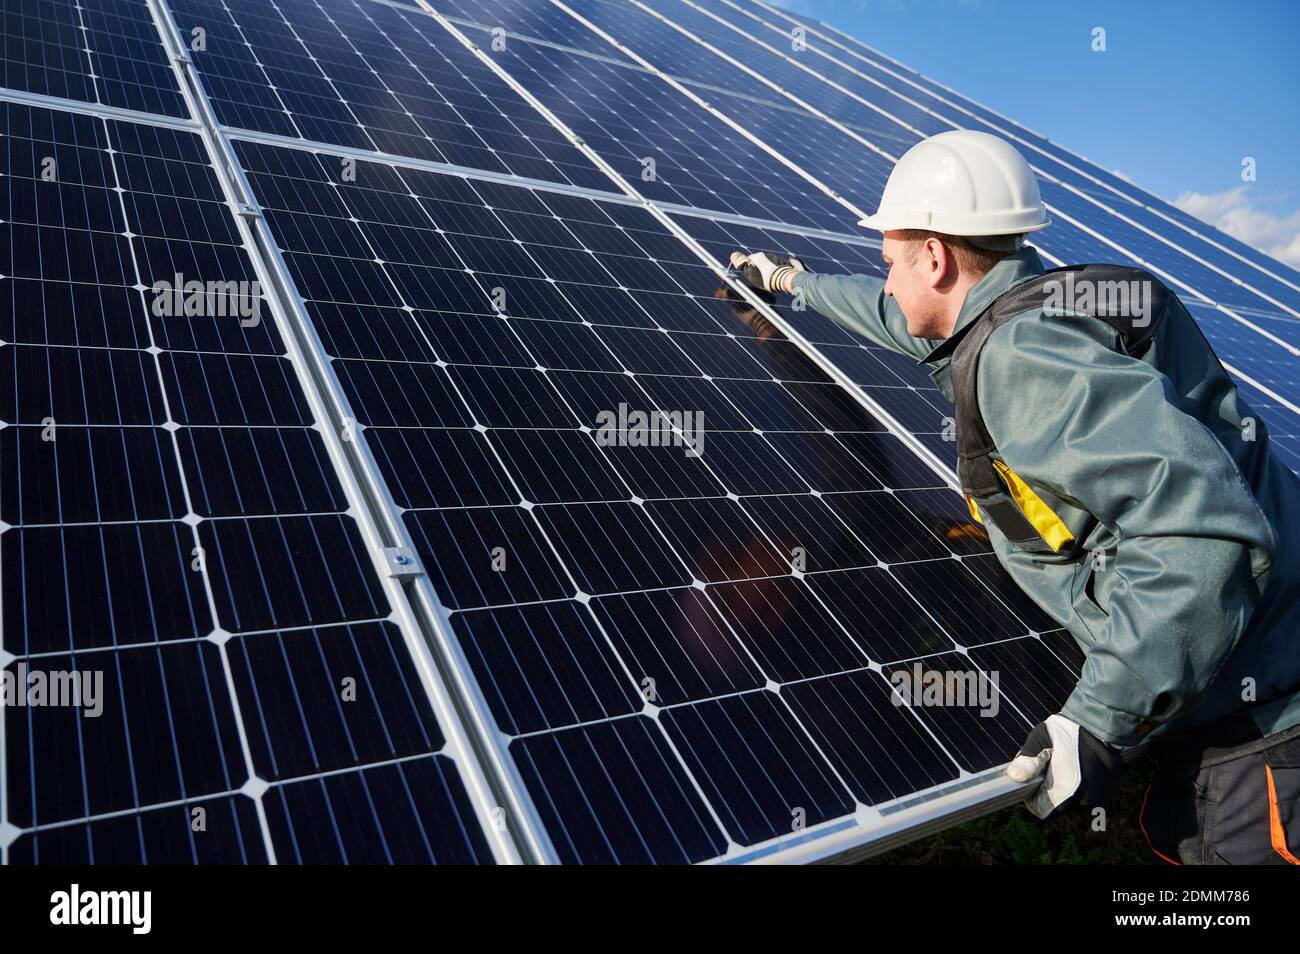 Mann Techniker in Sicherheitshelm Reparatur Photovoltaik Solarmodul. Elektriker in Handschuhe Wartung Solar-Photovoltaik-Panel-System. Konzept der alternativen Energie und Energie nachhaltige Ressourcen. Stockfoto